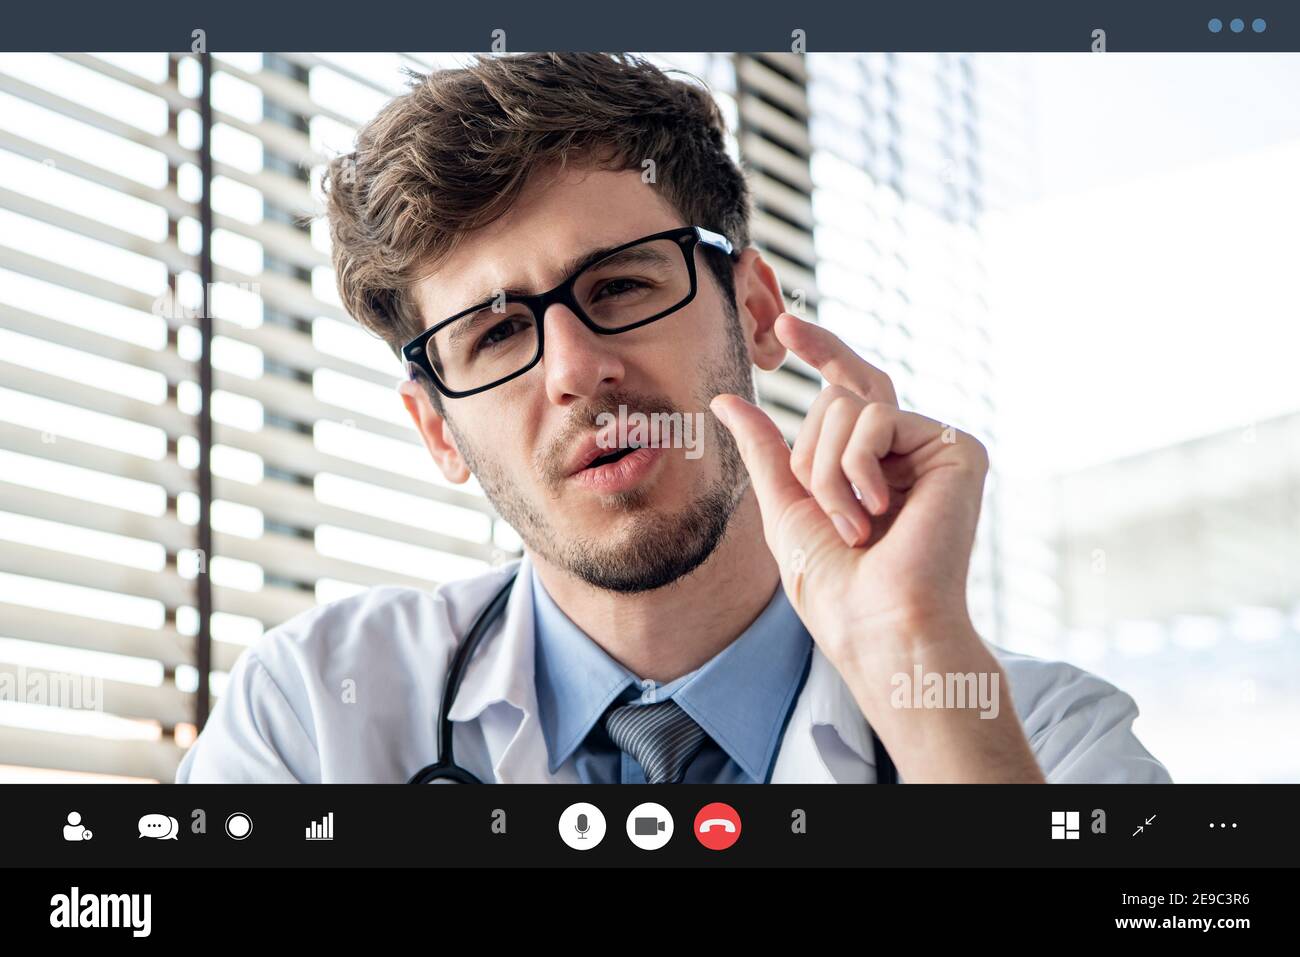 Médecin de sexe masculin faisant un appel vidéo parlant avec le patient, concepts de services de consultation médicale en ligne Banque D'Images